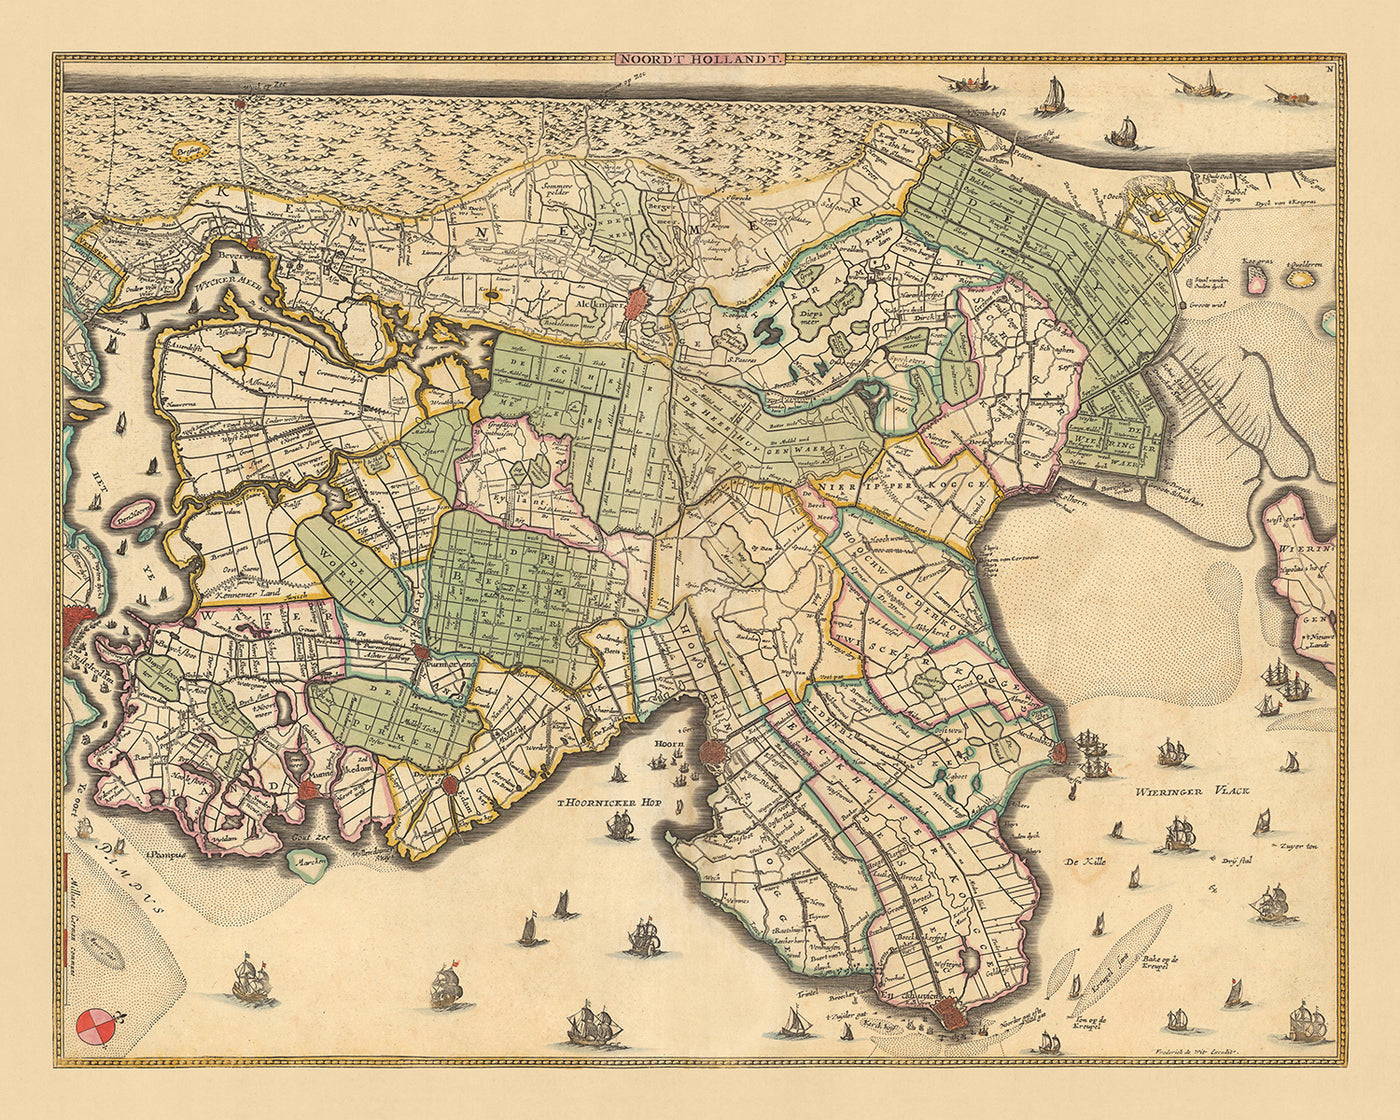 Ancienne carte de la Hollande du Nord par Visscher, 1690 : Amsterdam, Alkmaar, Hoorn, Beverwijk, Purmerend